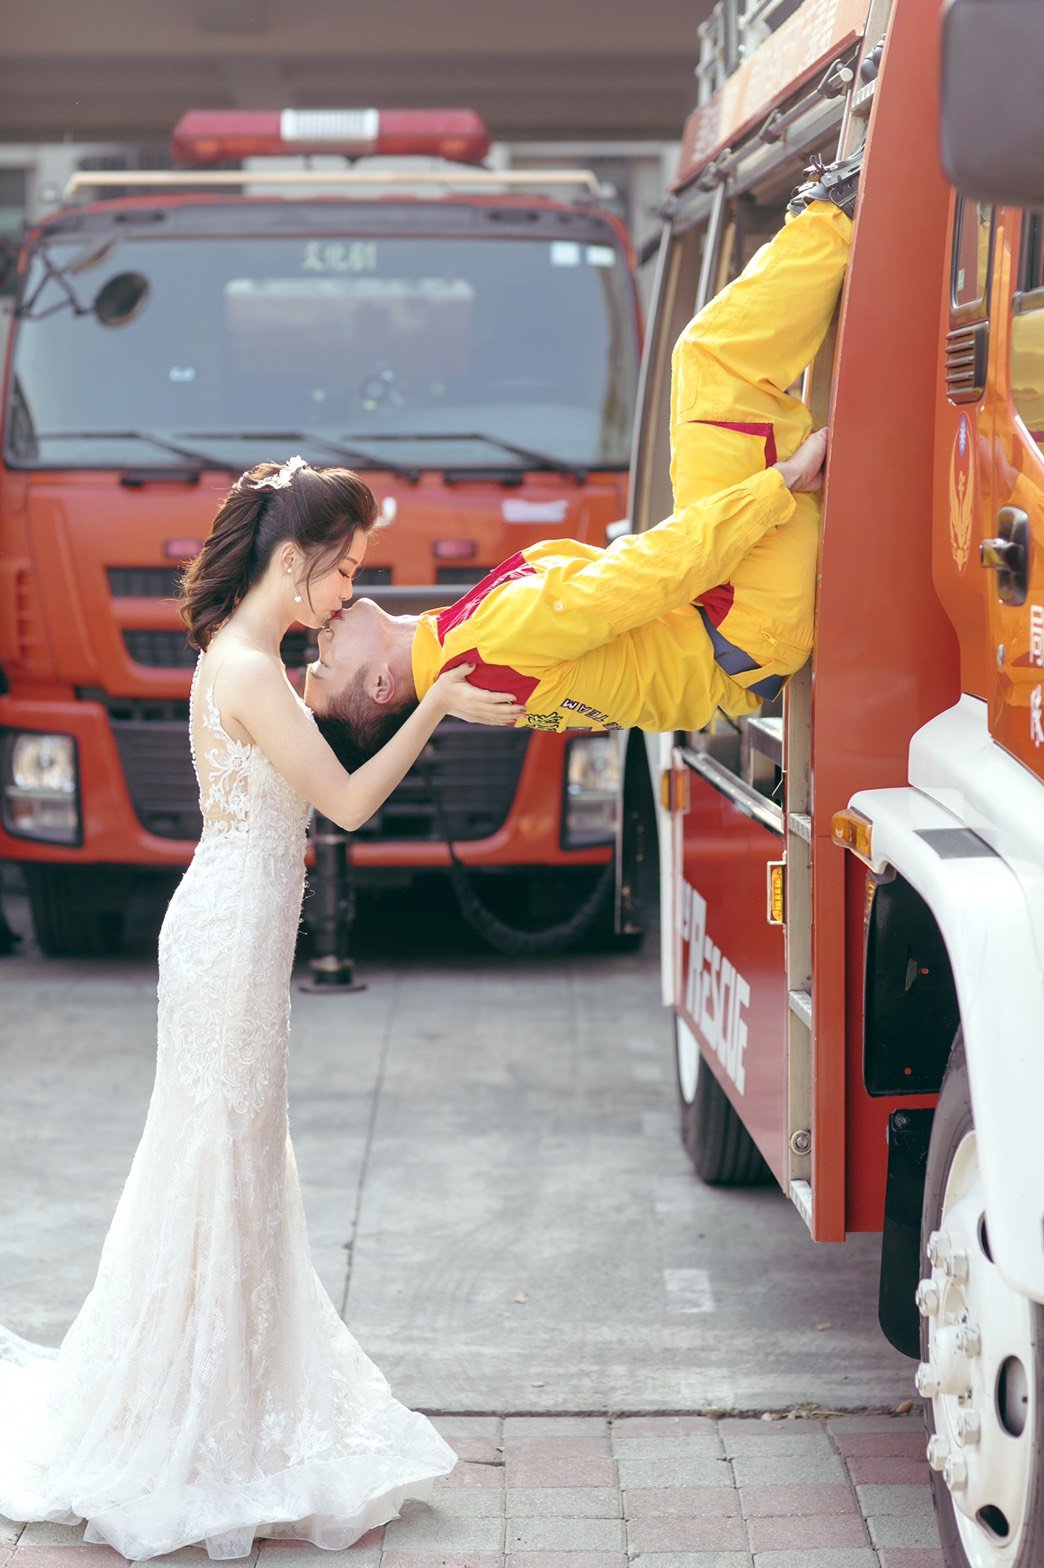 謝謝紐約紐約幫我拍攝美美的婚紗‍️-婚禮廠商評價